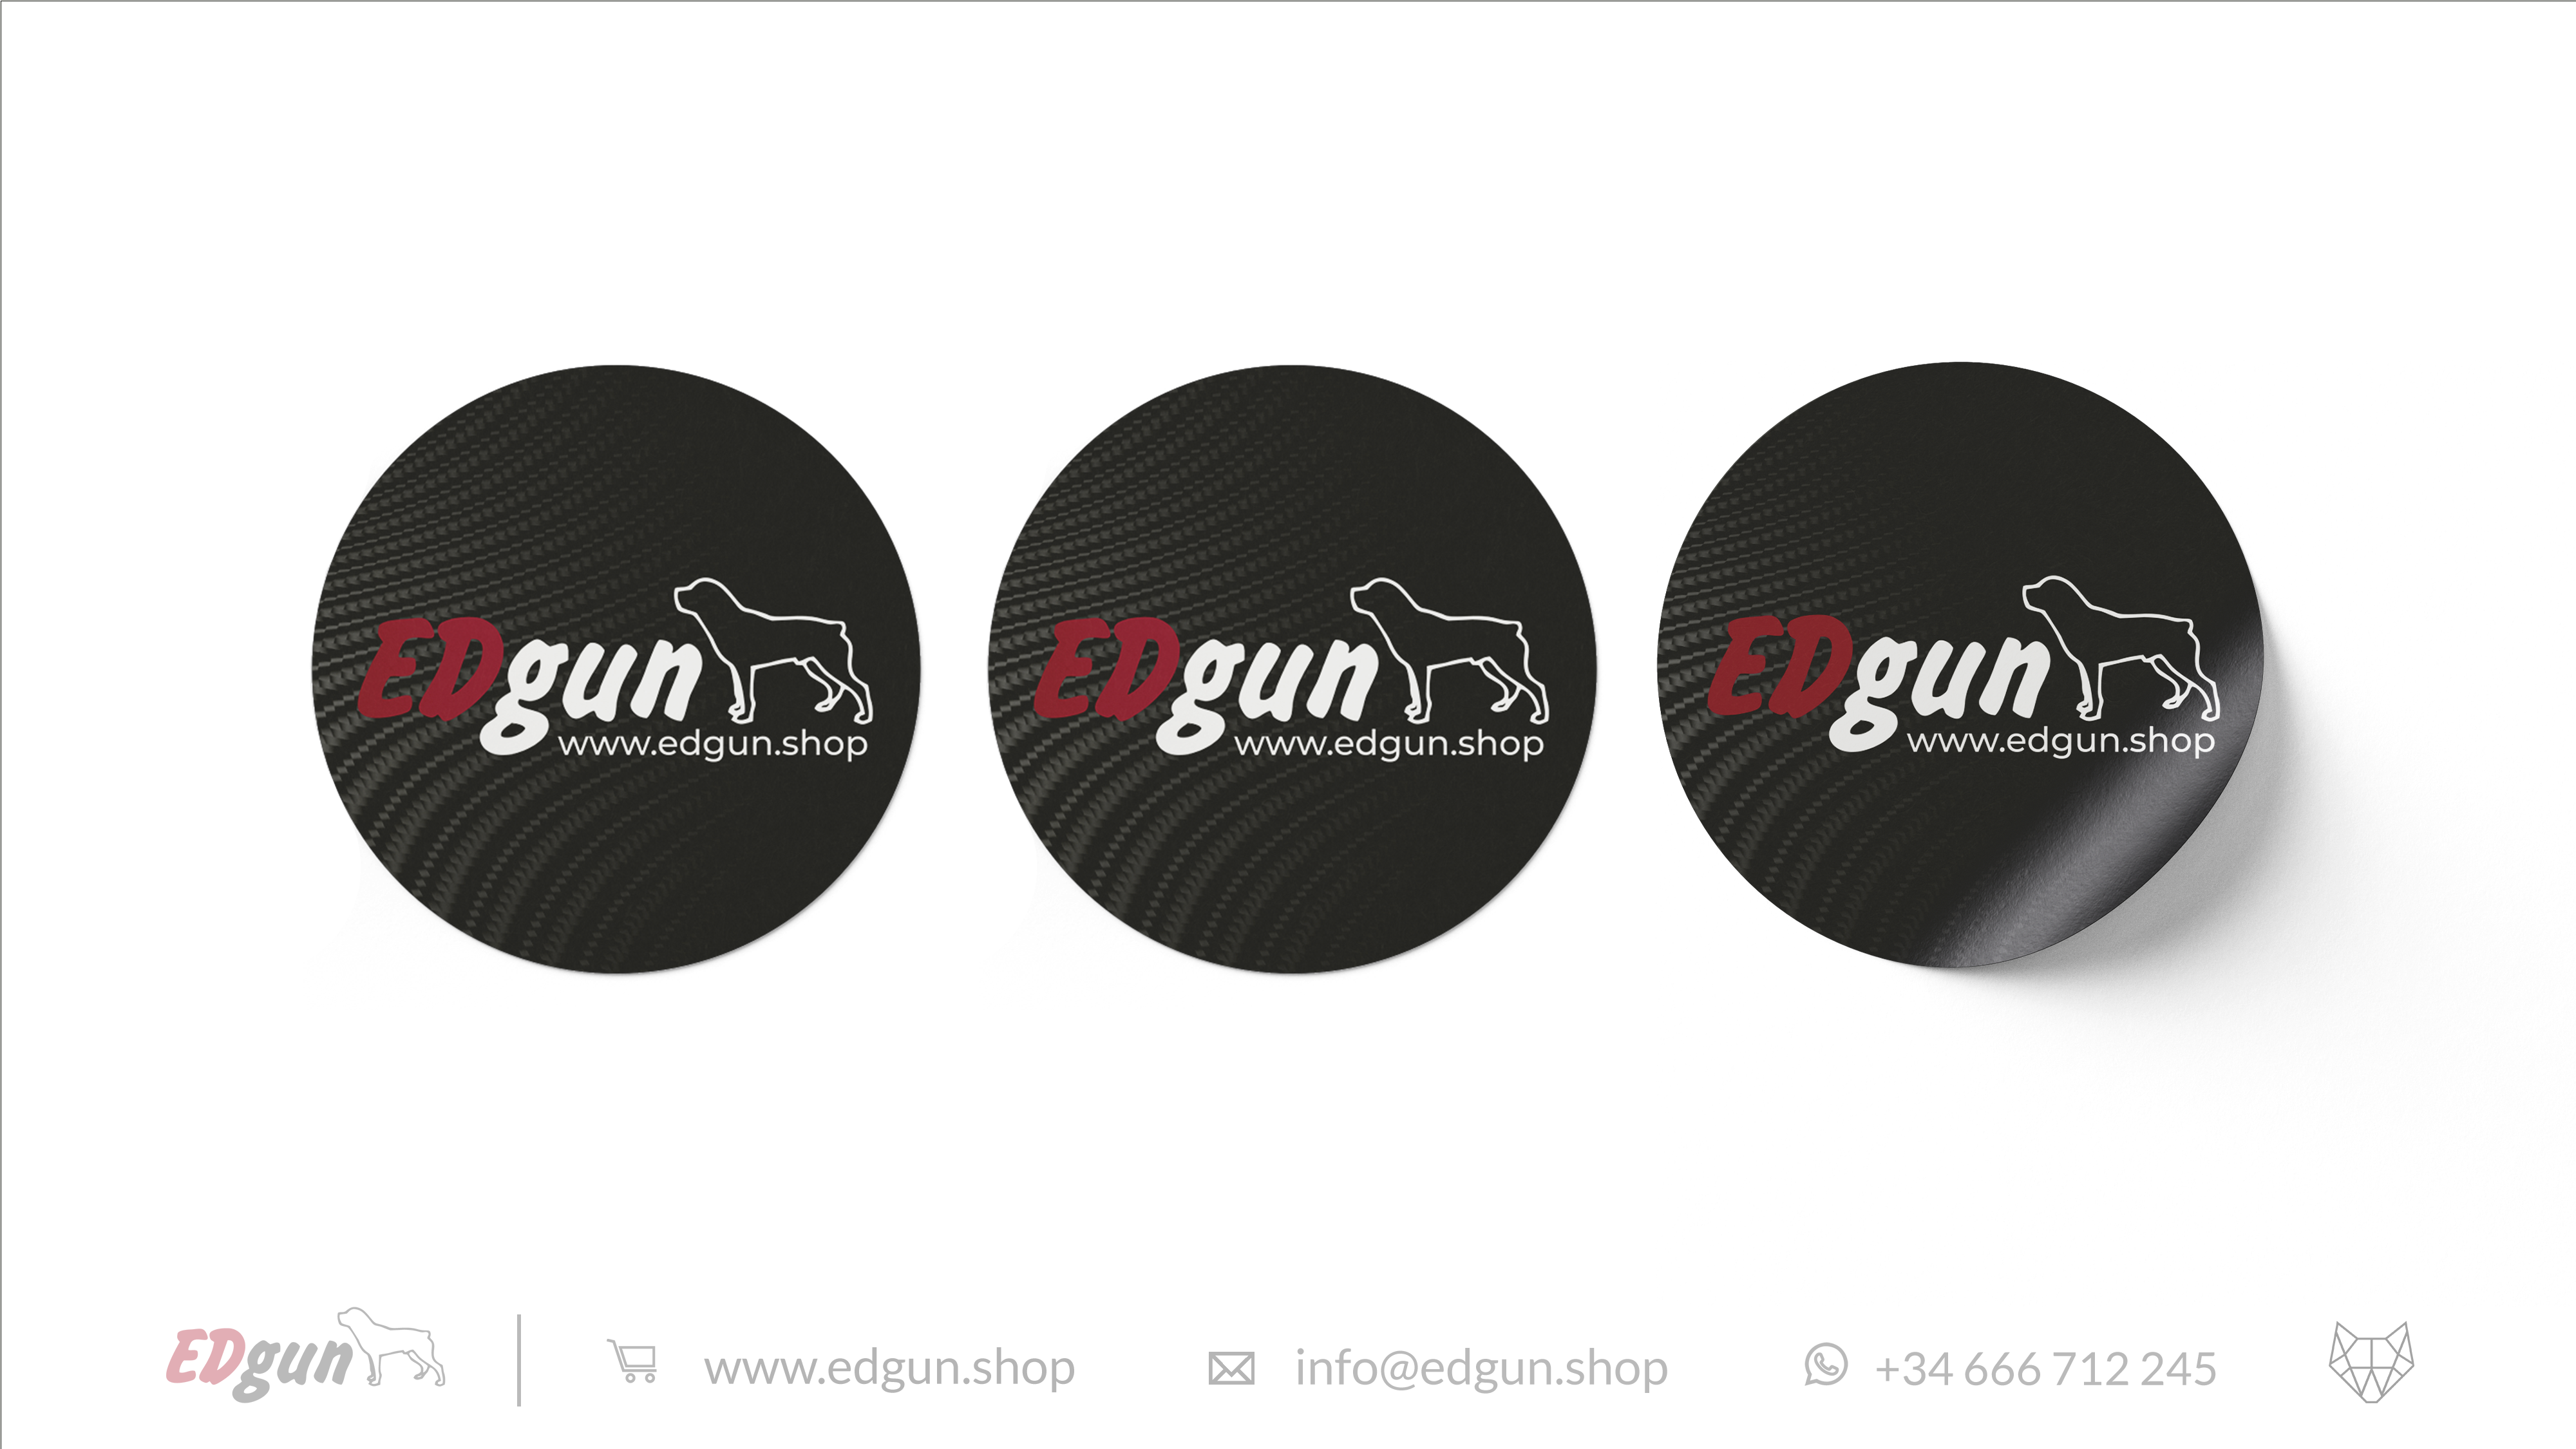 3 stickers with Edgun logo